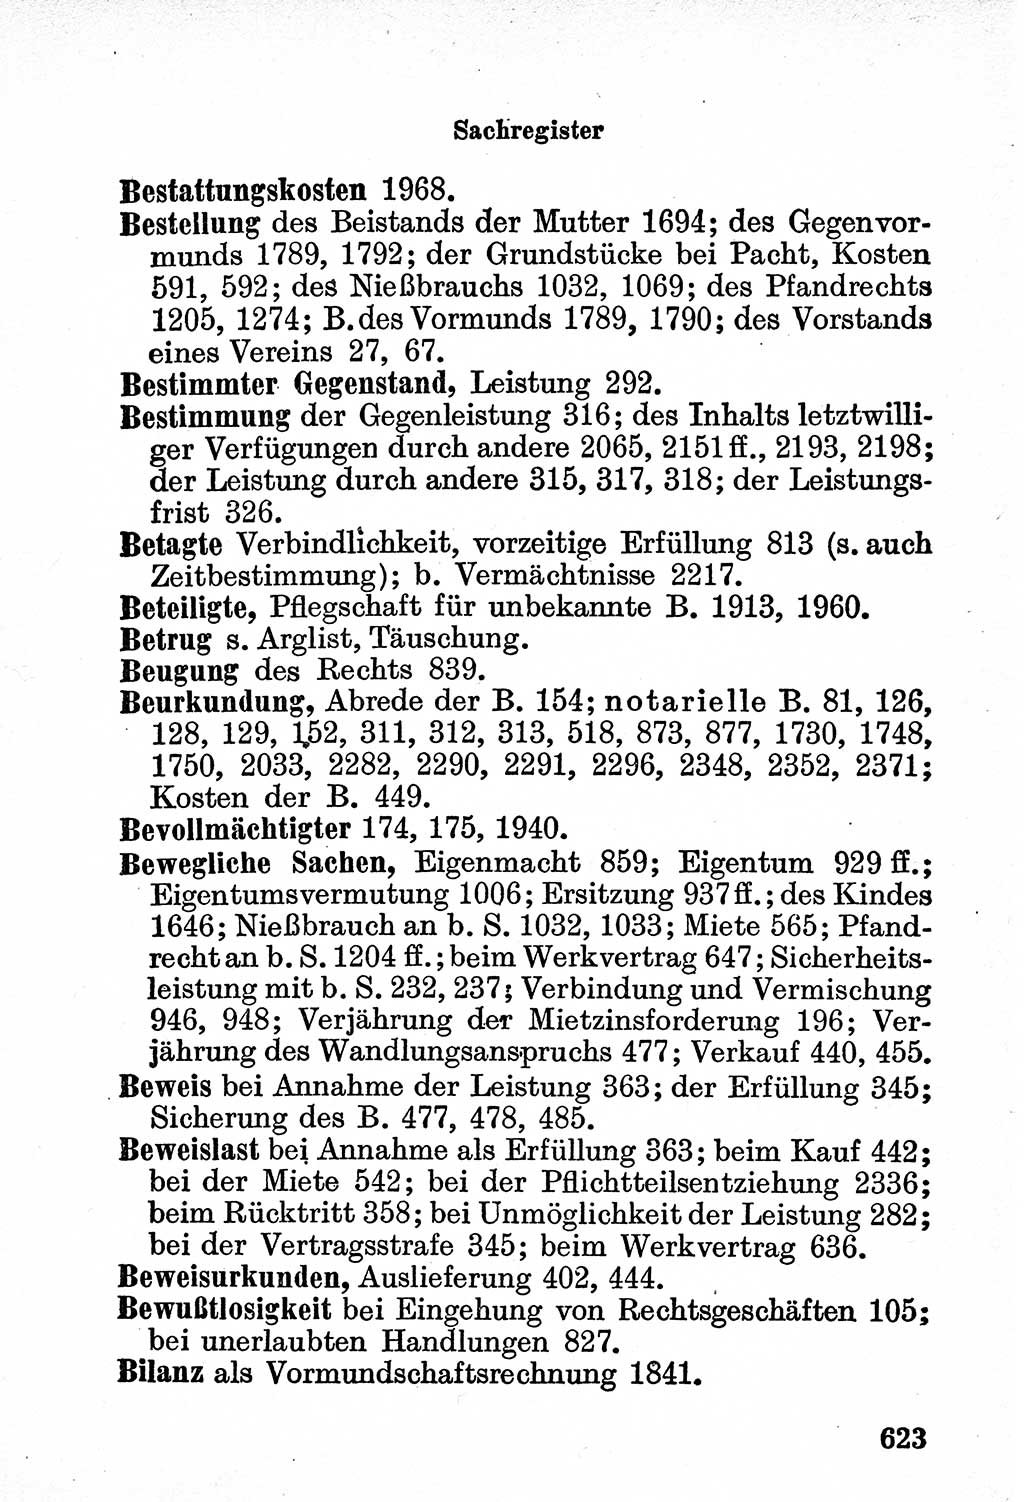 Bürgerliches Gesetzbuch (BGB) nebst wichtigen Nebengesetzen [Deutsche Demokratische Republik (DDR)] 1956, Seite 623 (BGB Nebenges. DDR 1956, S. 623)